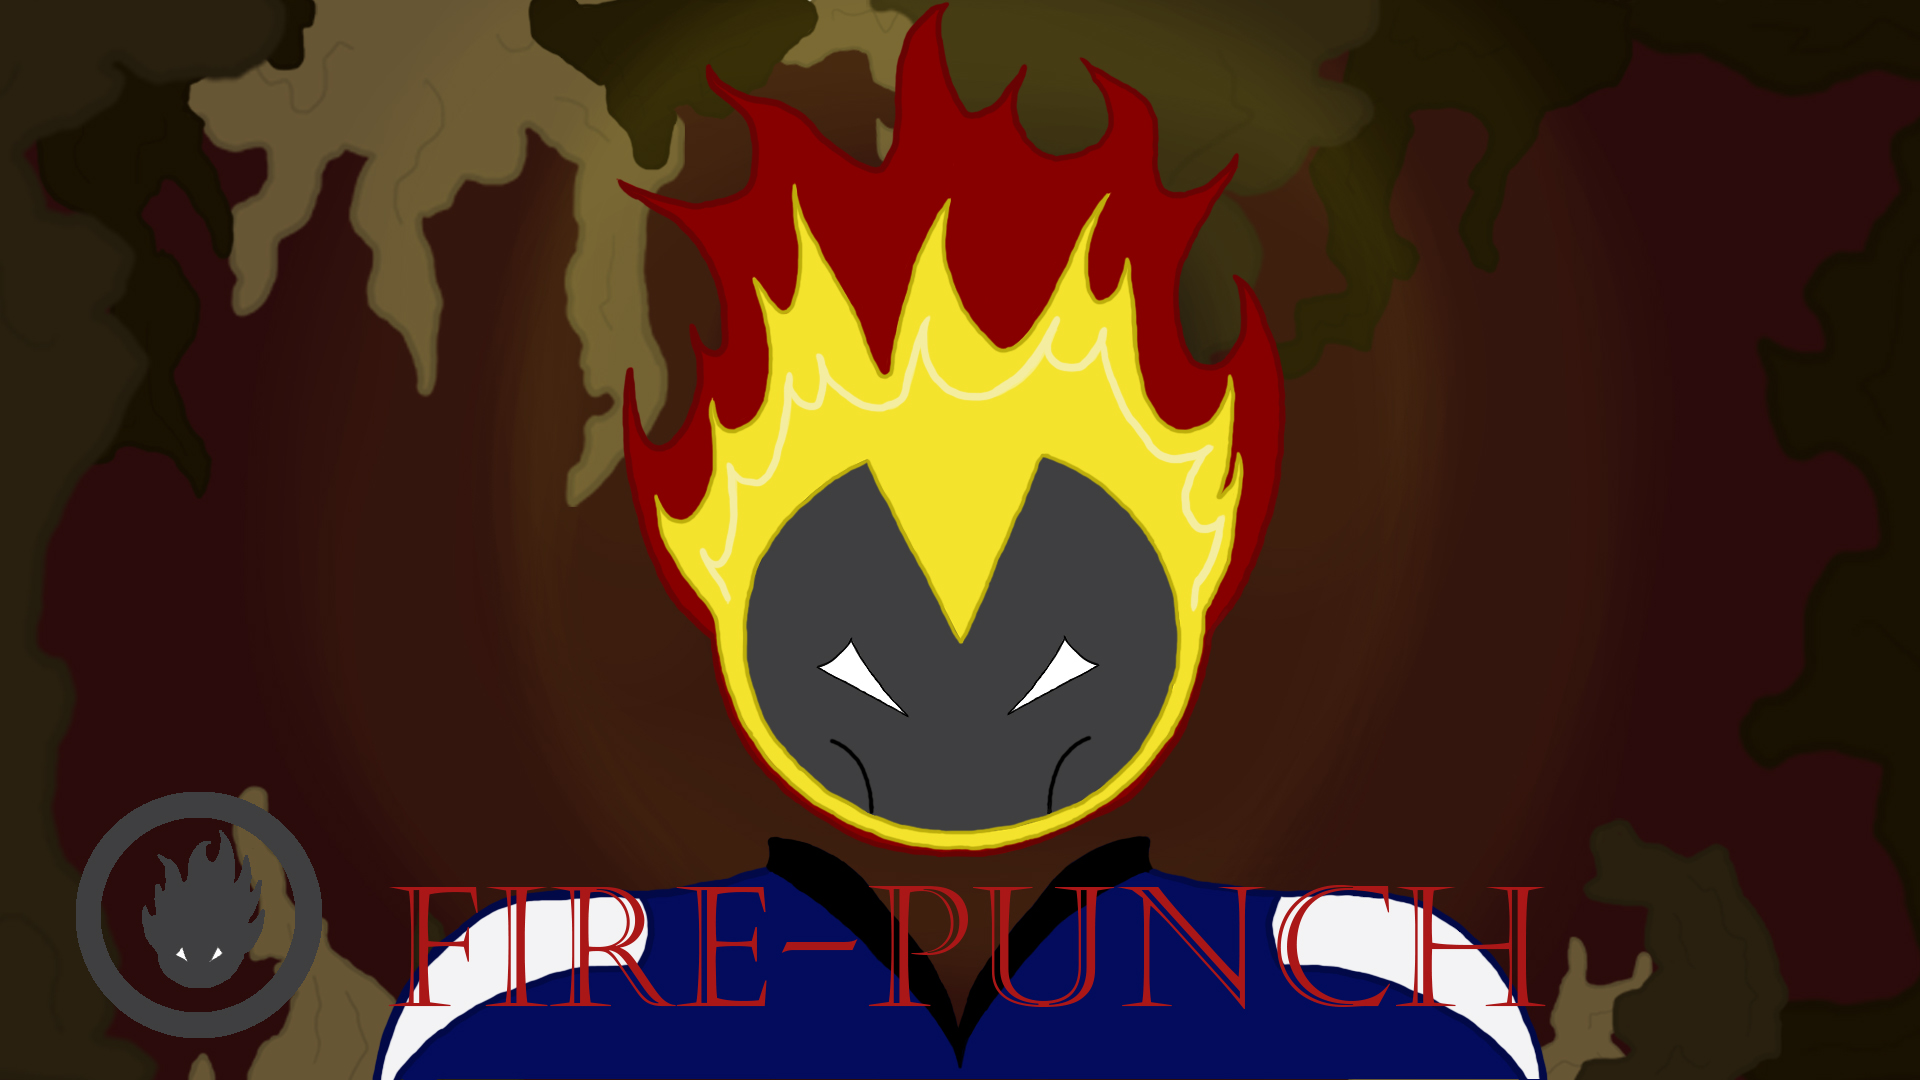 FirePunch